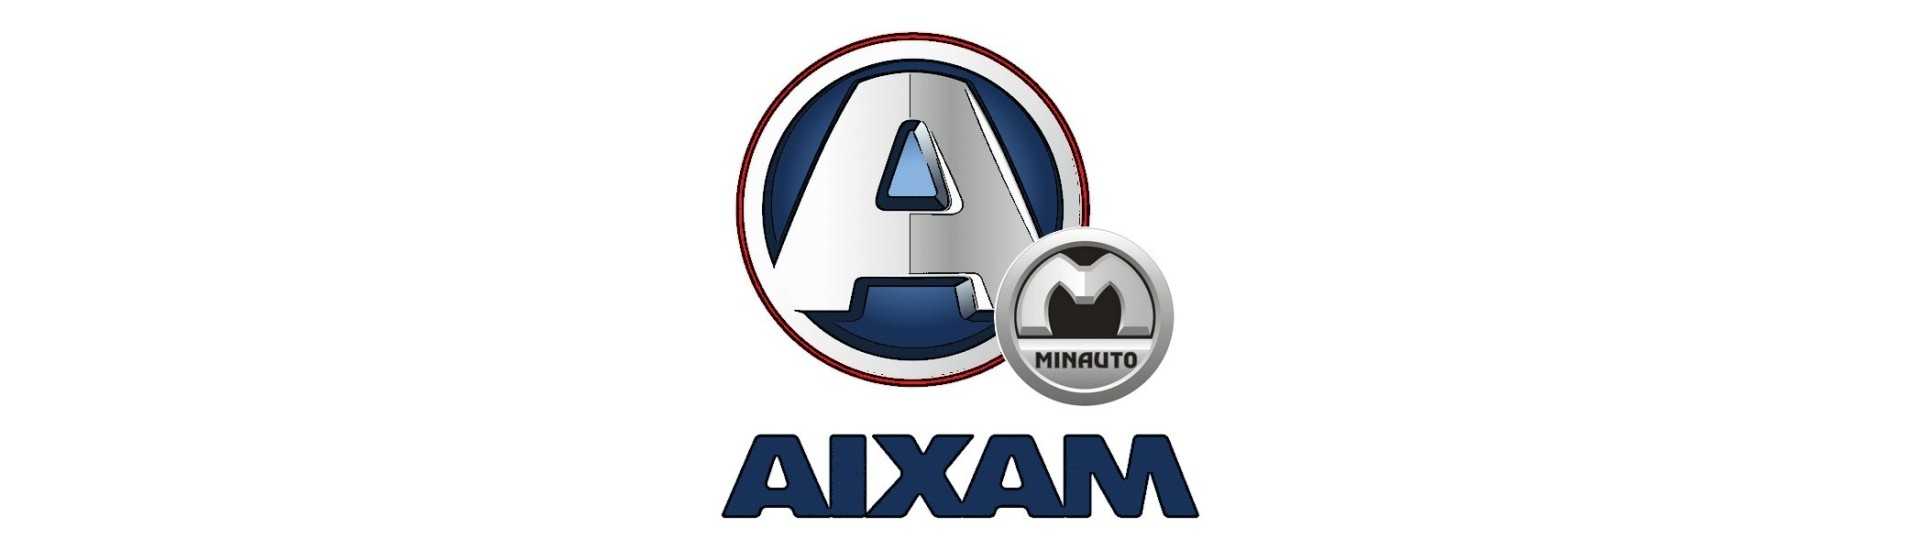 radiador soporte mejor precio coche sin licencia Aixam Minauto